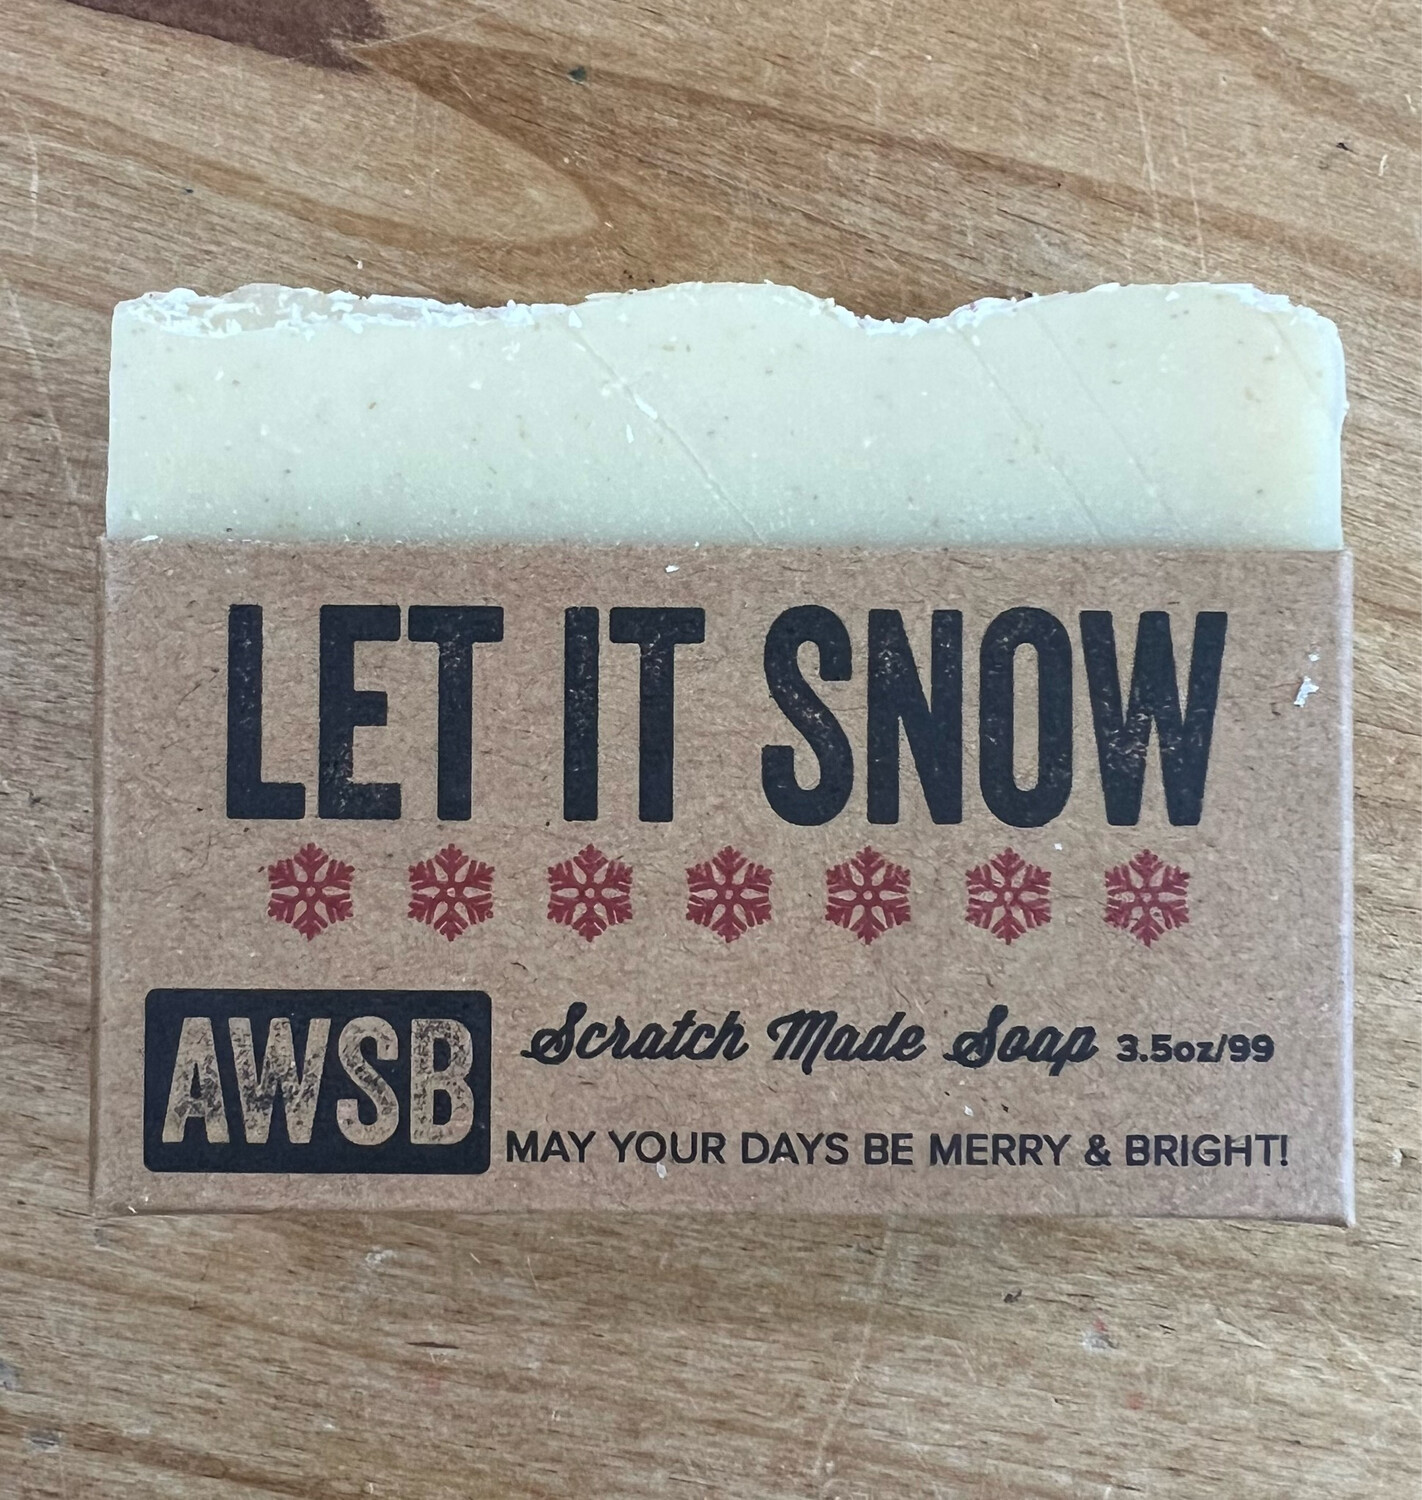 Wild Soap Co - Let It Snow